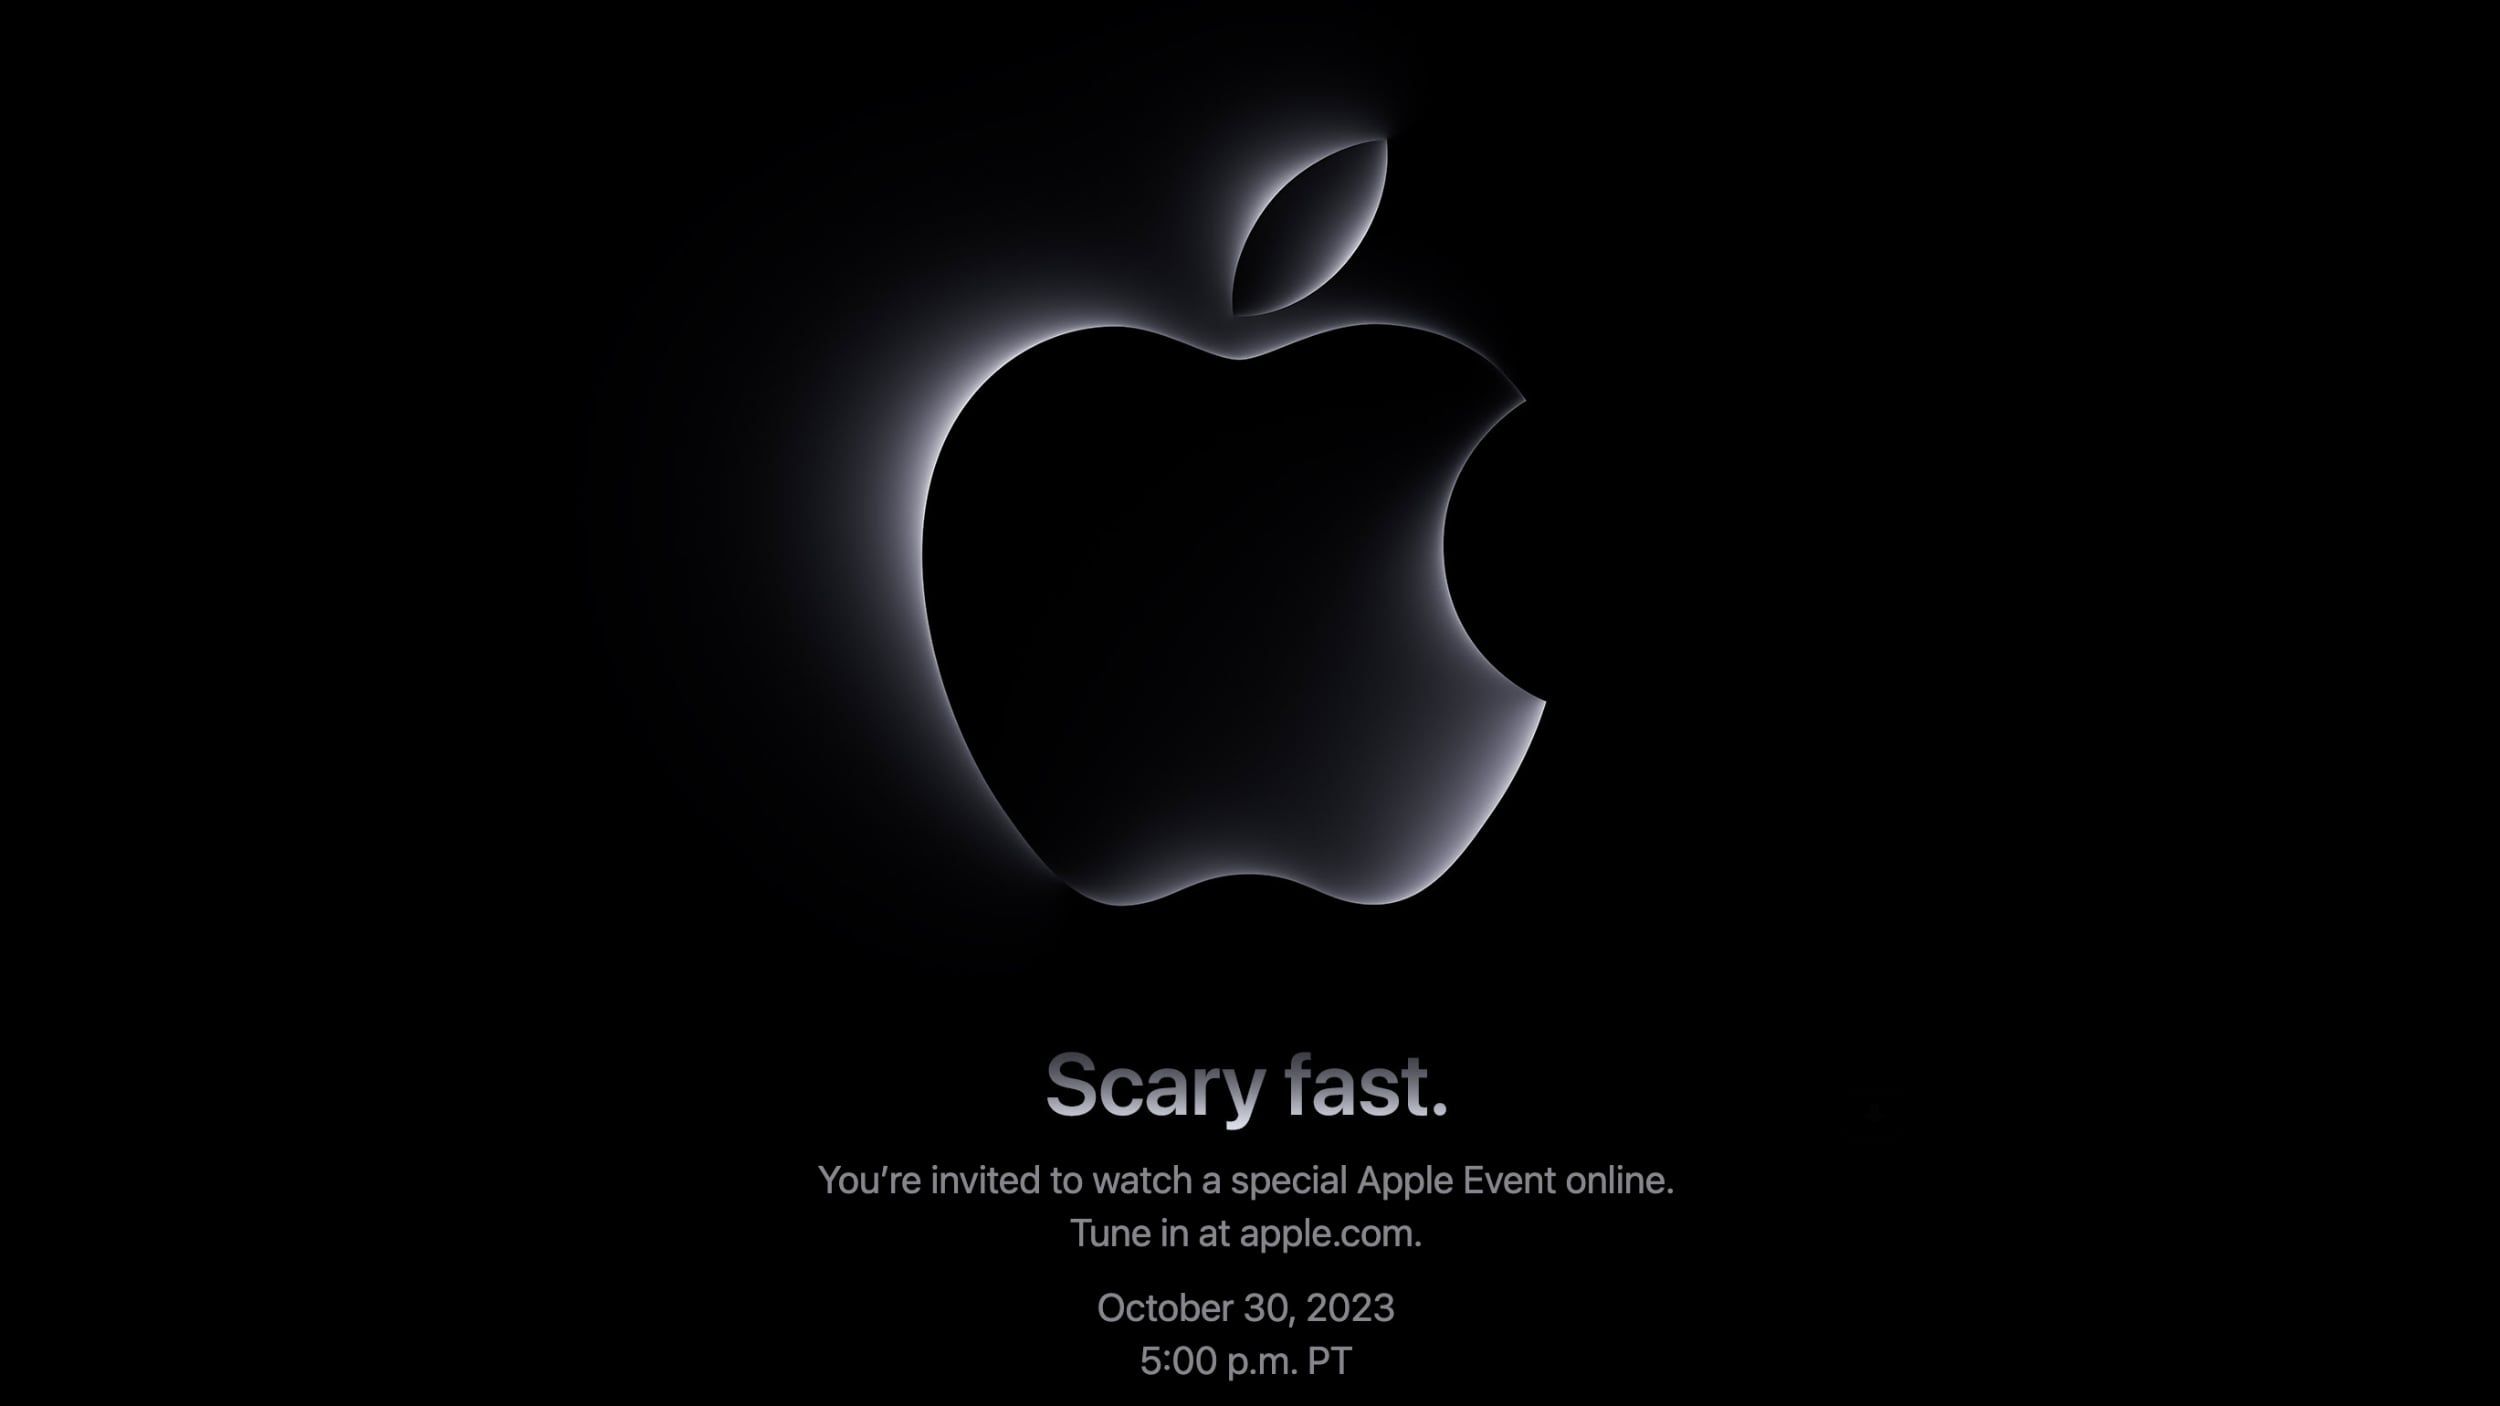 Apple anuncia evento de outubro para Mac: “Scary Fast”